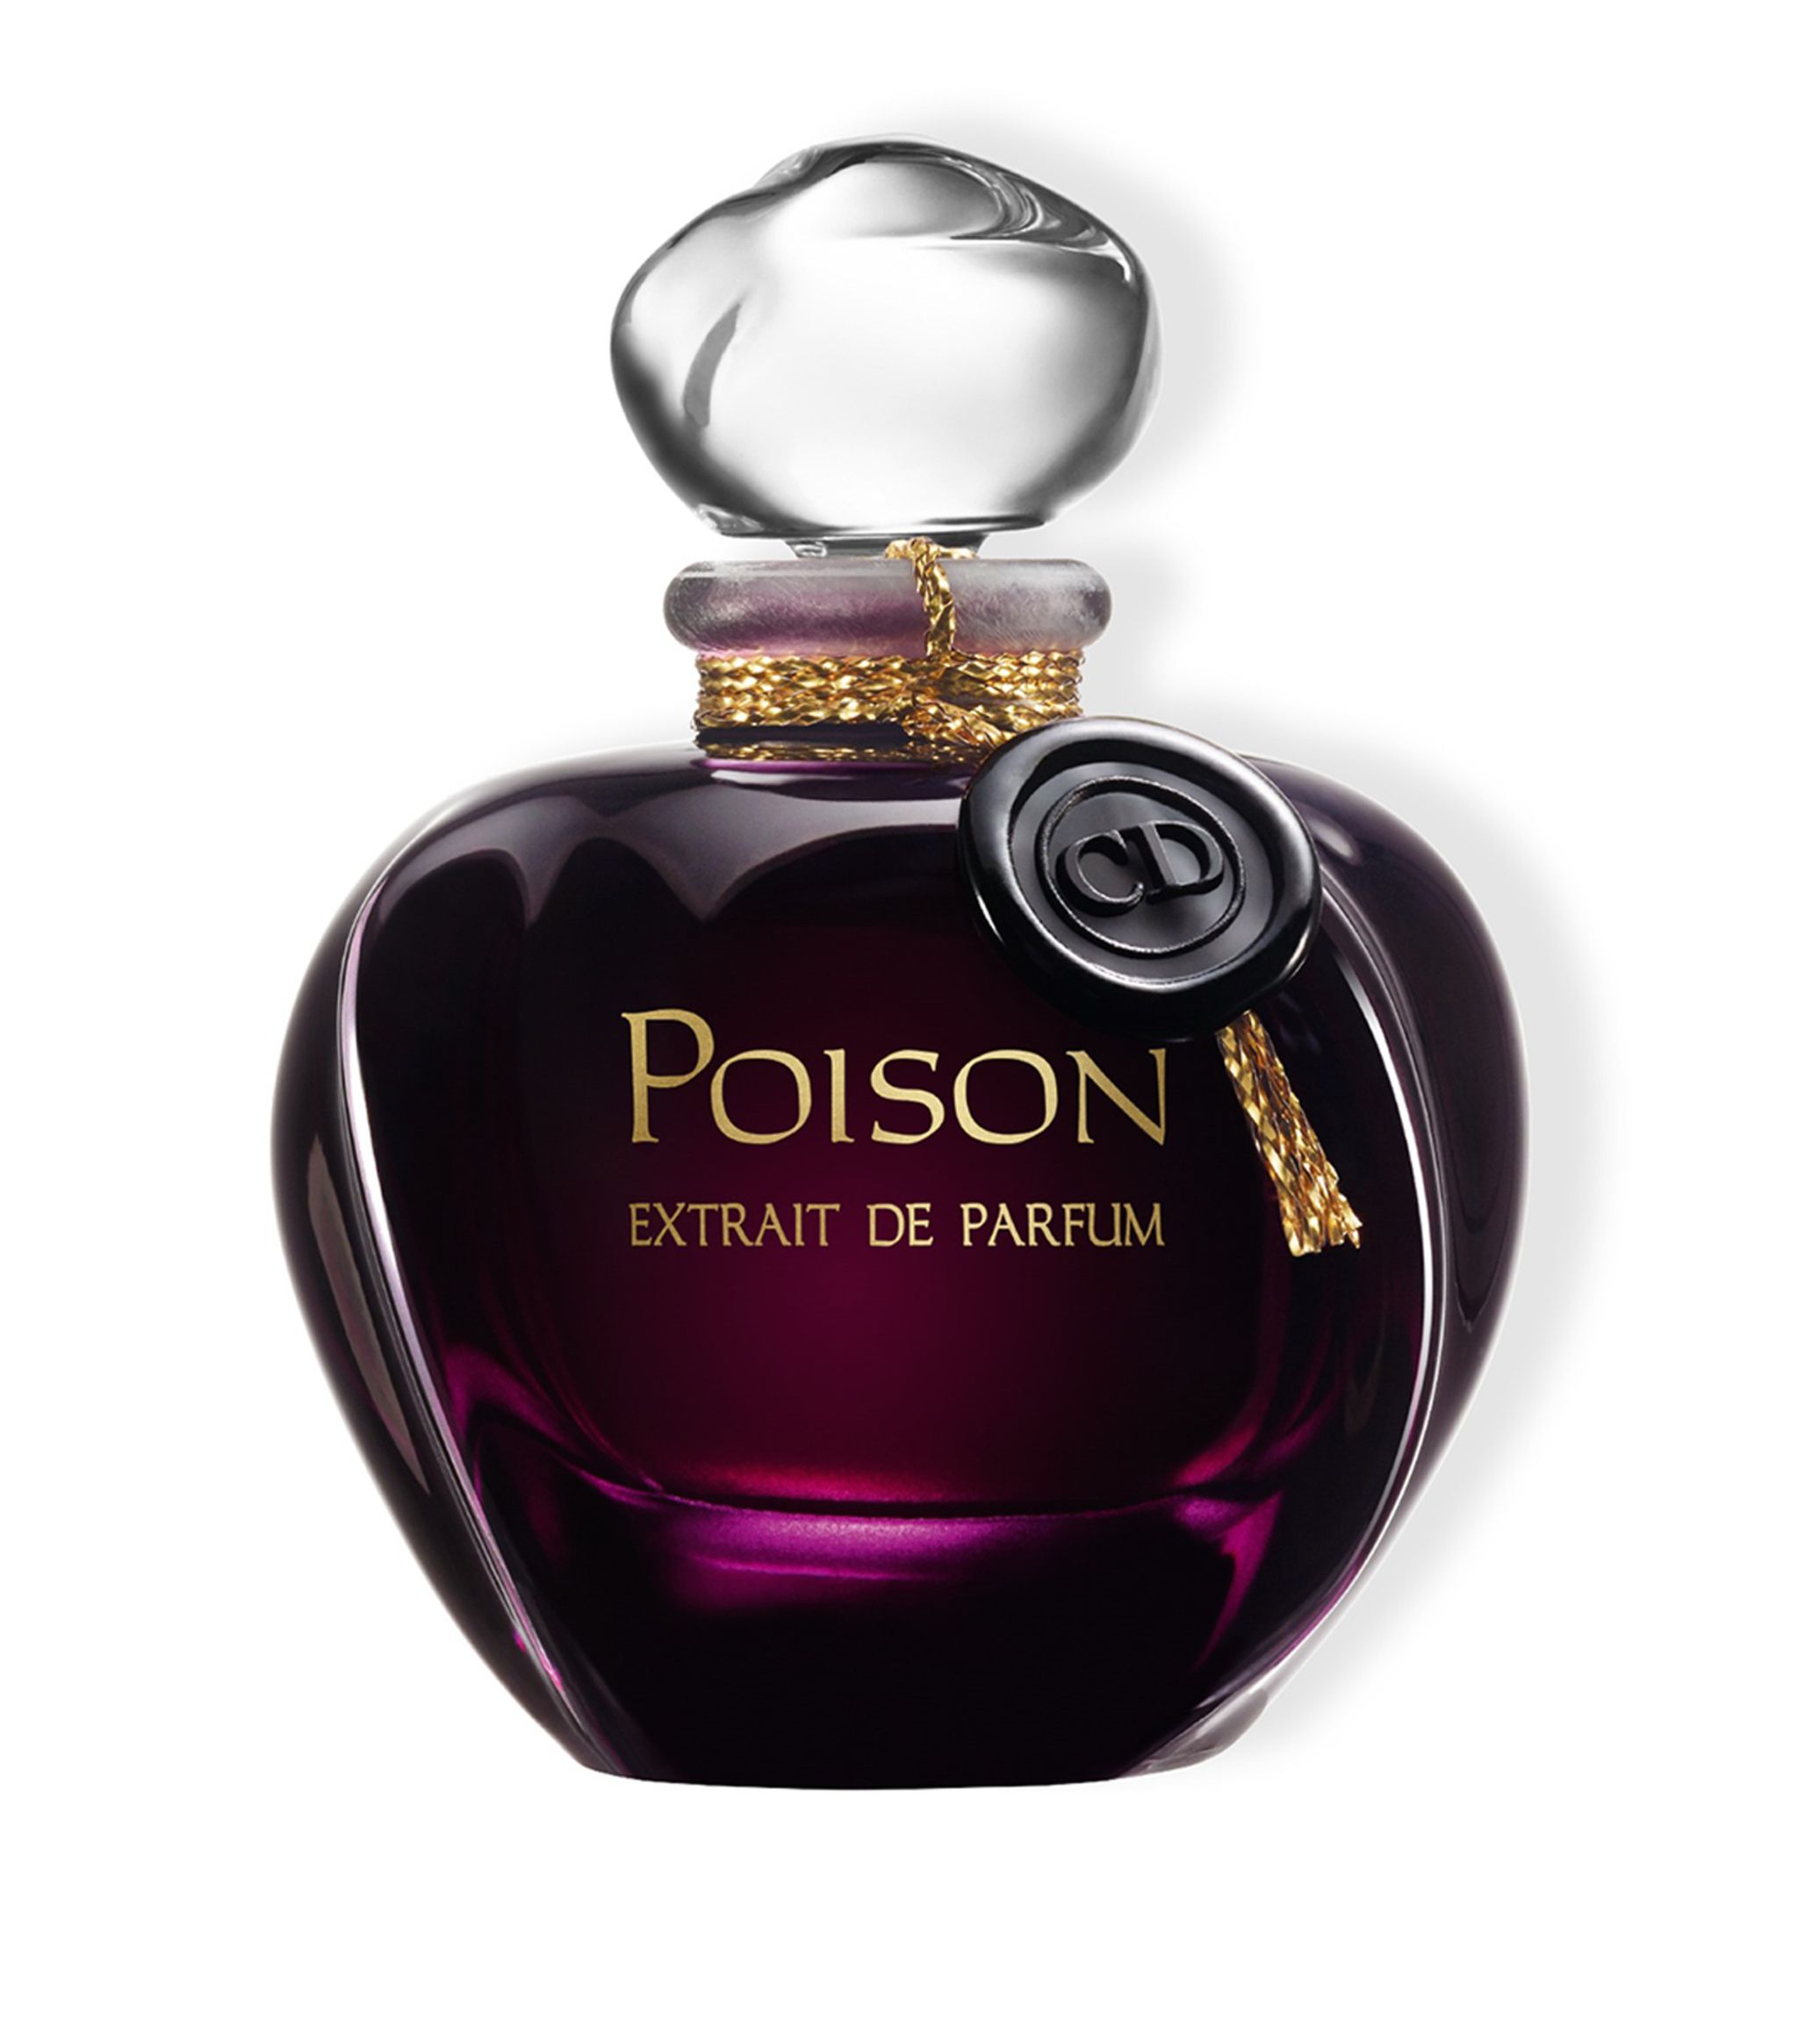 Poison Extrait de Parfum Christian Dior